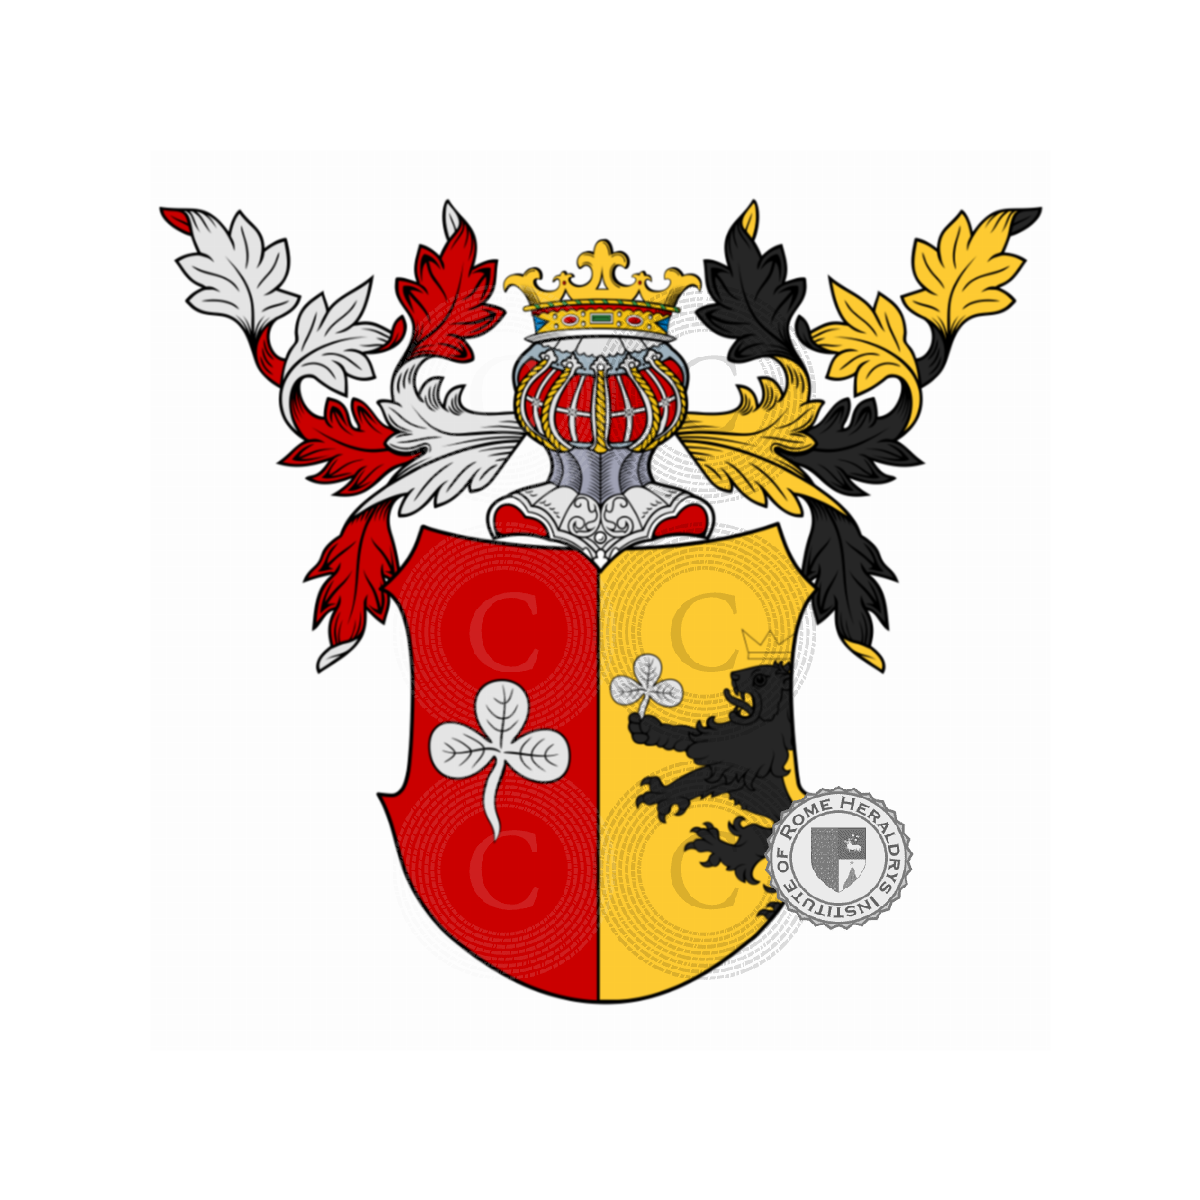 Escudo de la familiaSchittler, Schirtler,Schittler